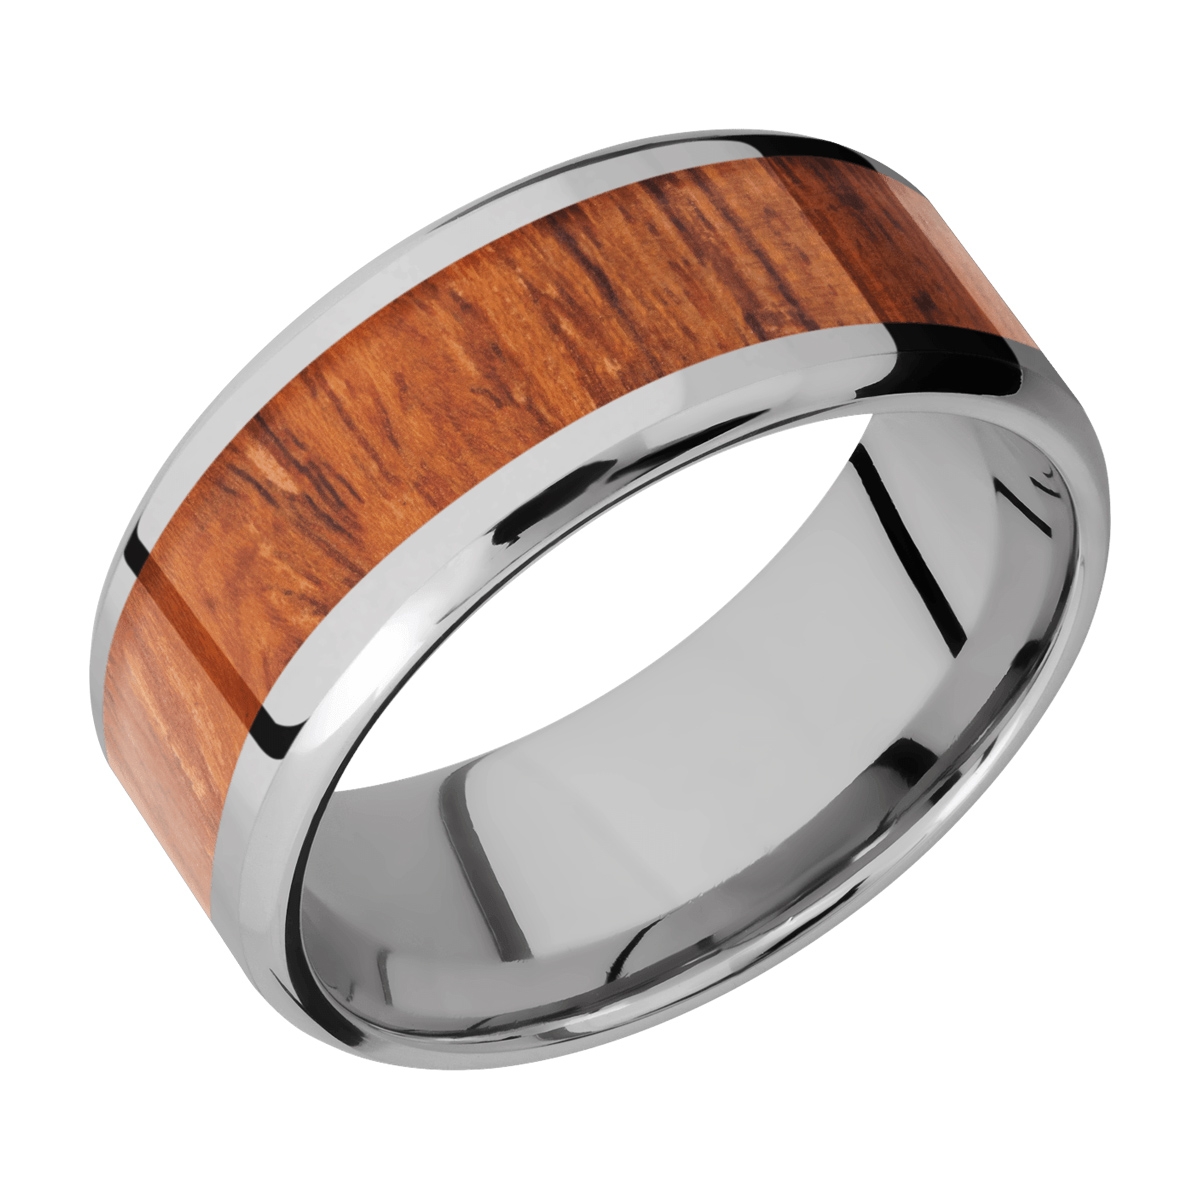 Lashbrook 9B16(NS)/HARDWOOD Titanium Wedding Ring or Band